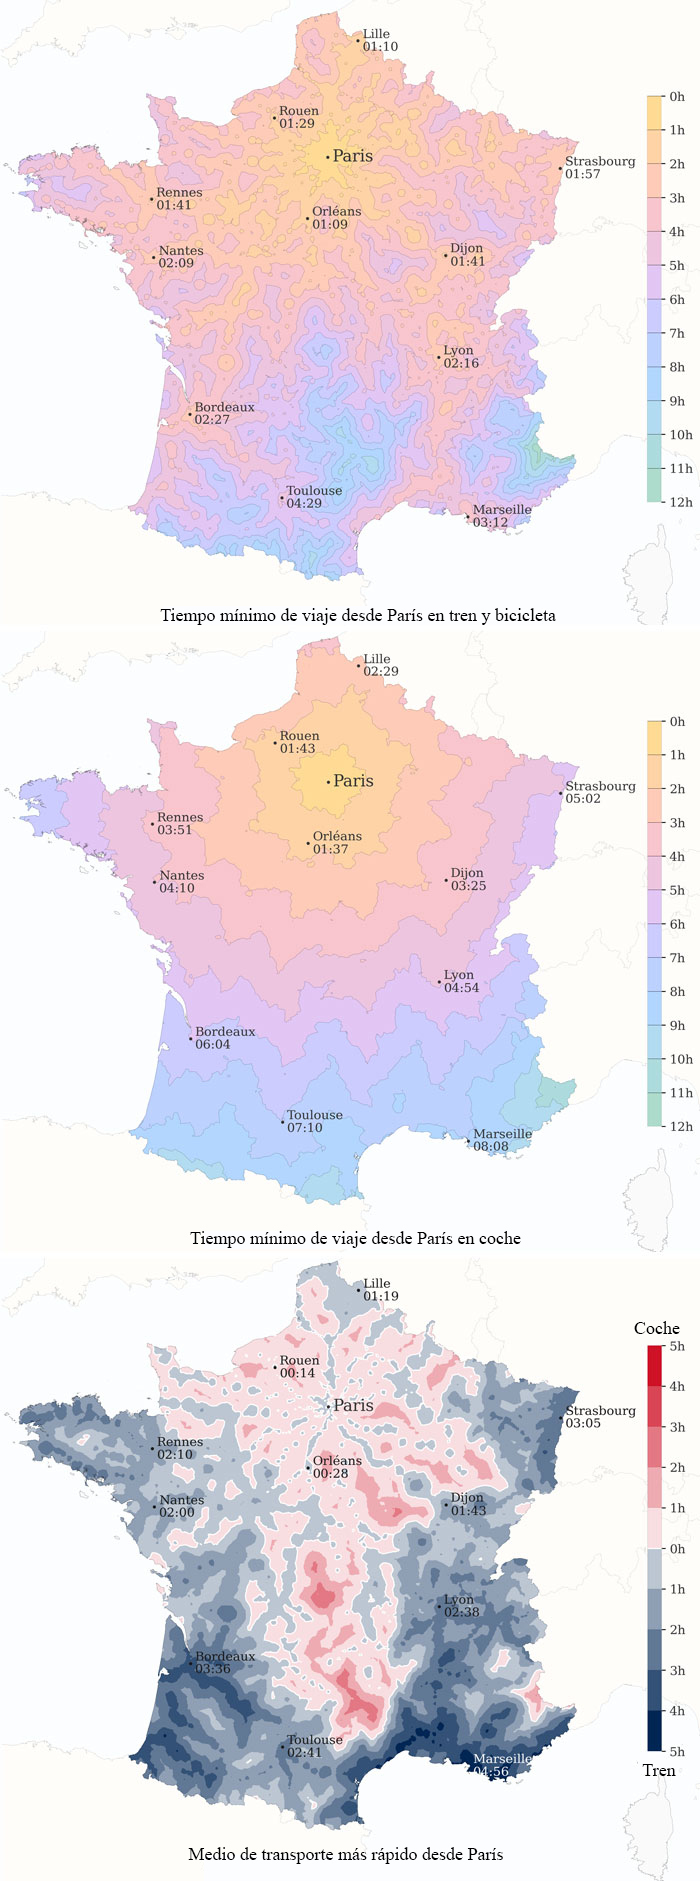 Tiempo Mínimo De Viaje Desde París En Tren Y Bicicleta, Comparados Con El Viaje En Coche